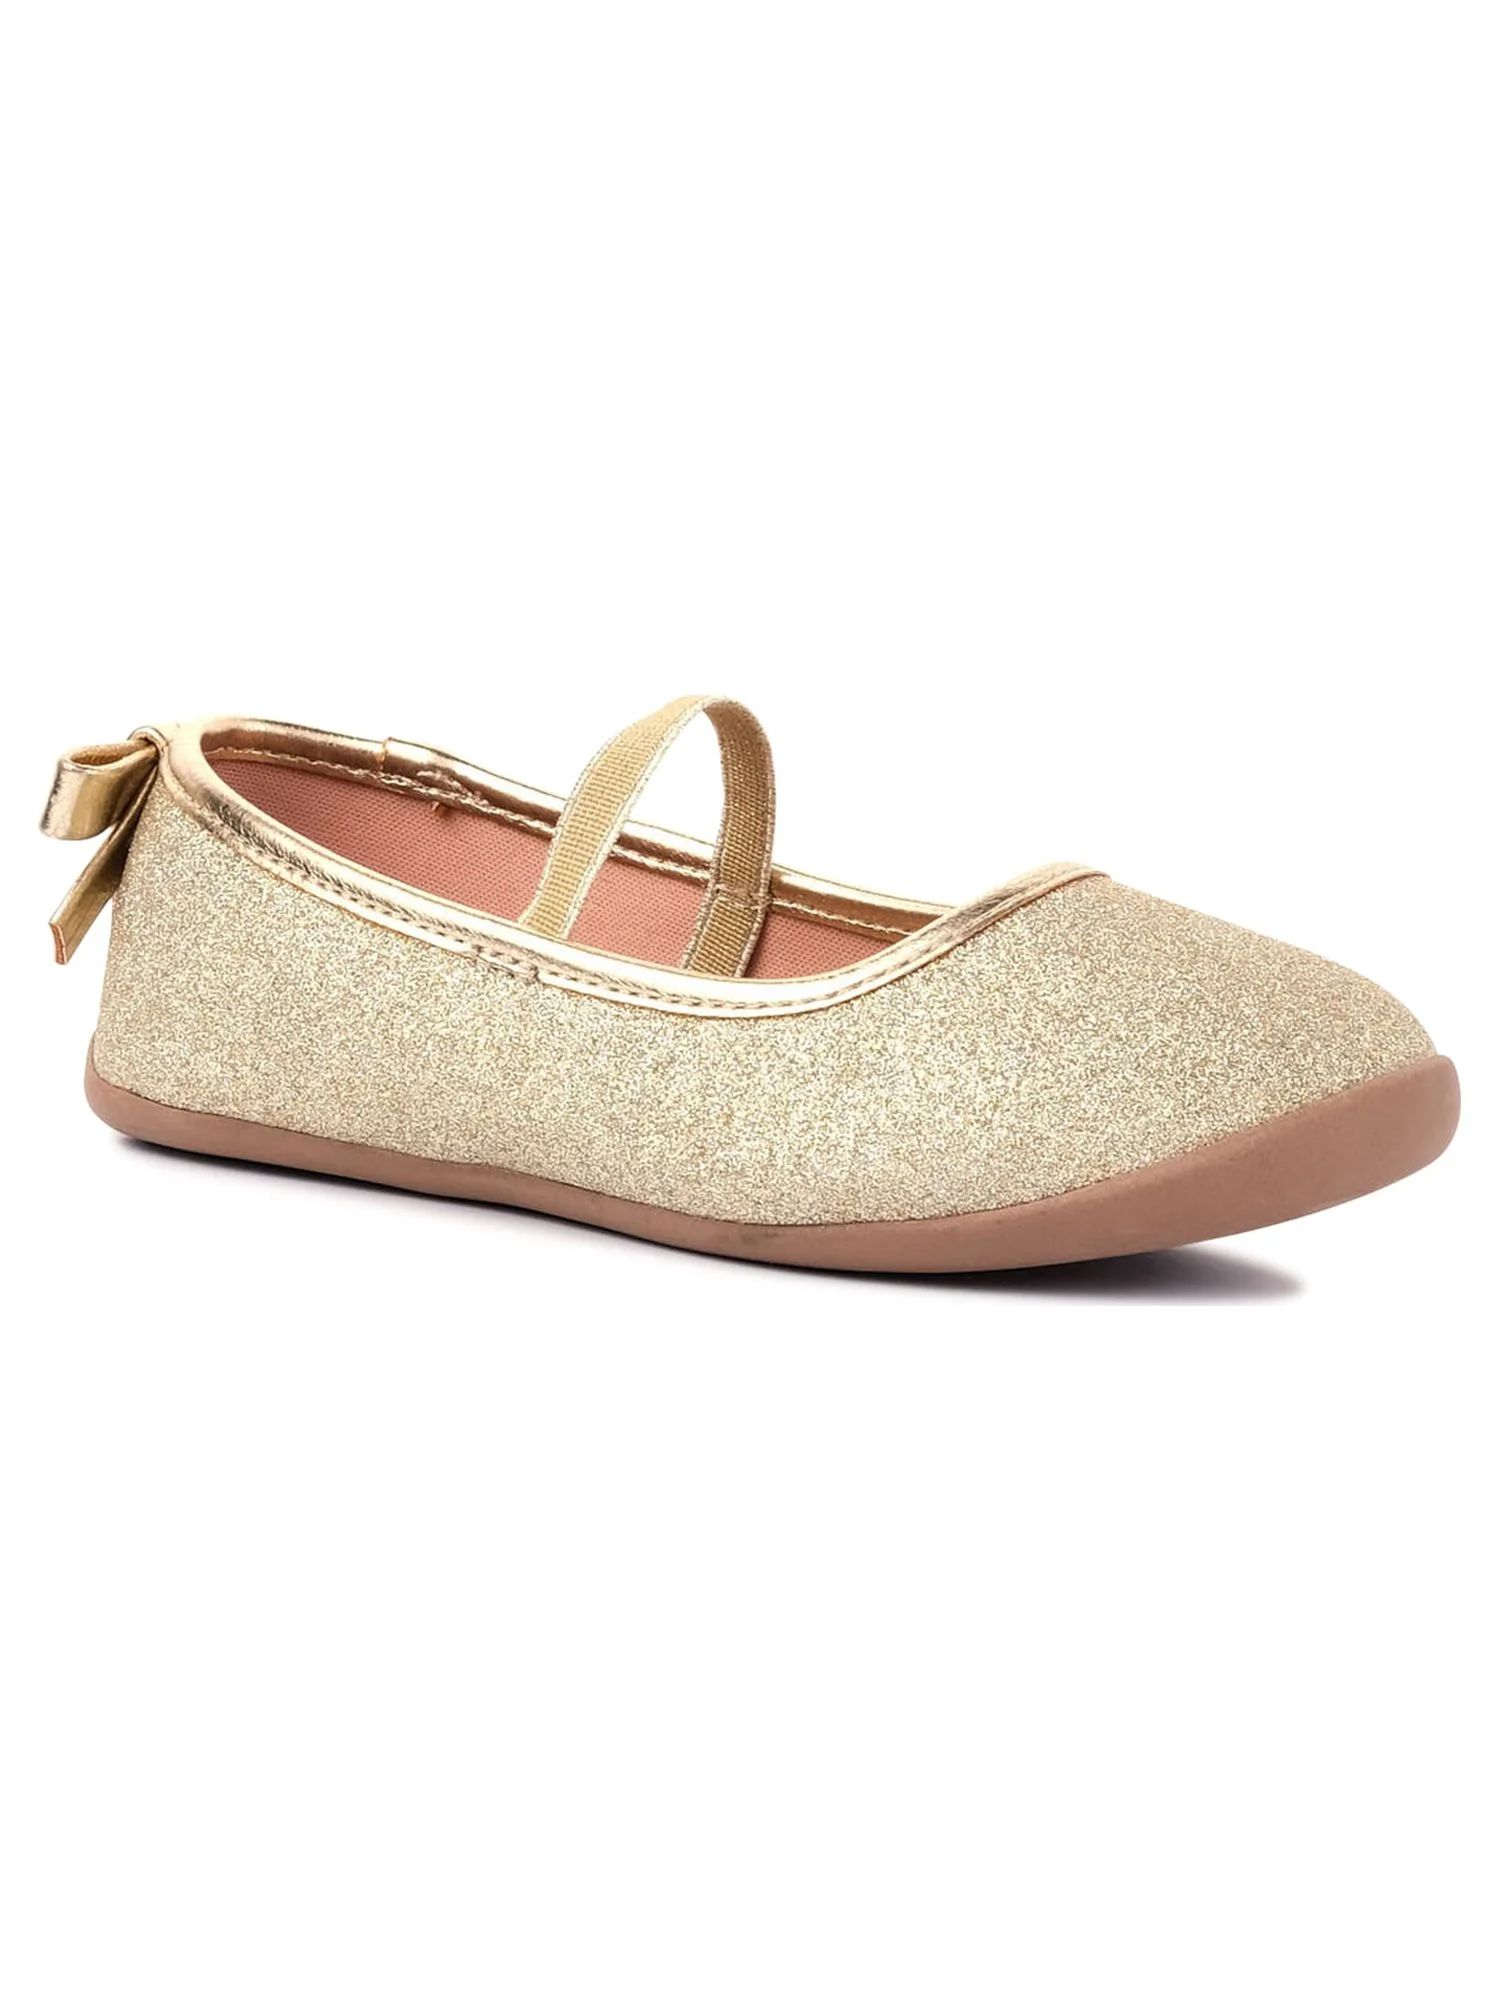 Wonder Nation Toddler Girls Ballet Flat Dress Shoes, Sizes 7-12 | Walmart (US)